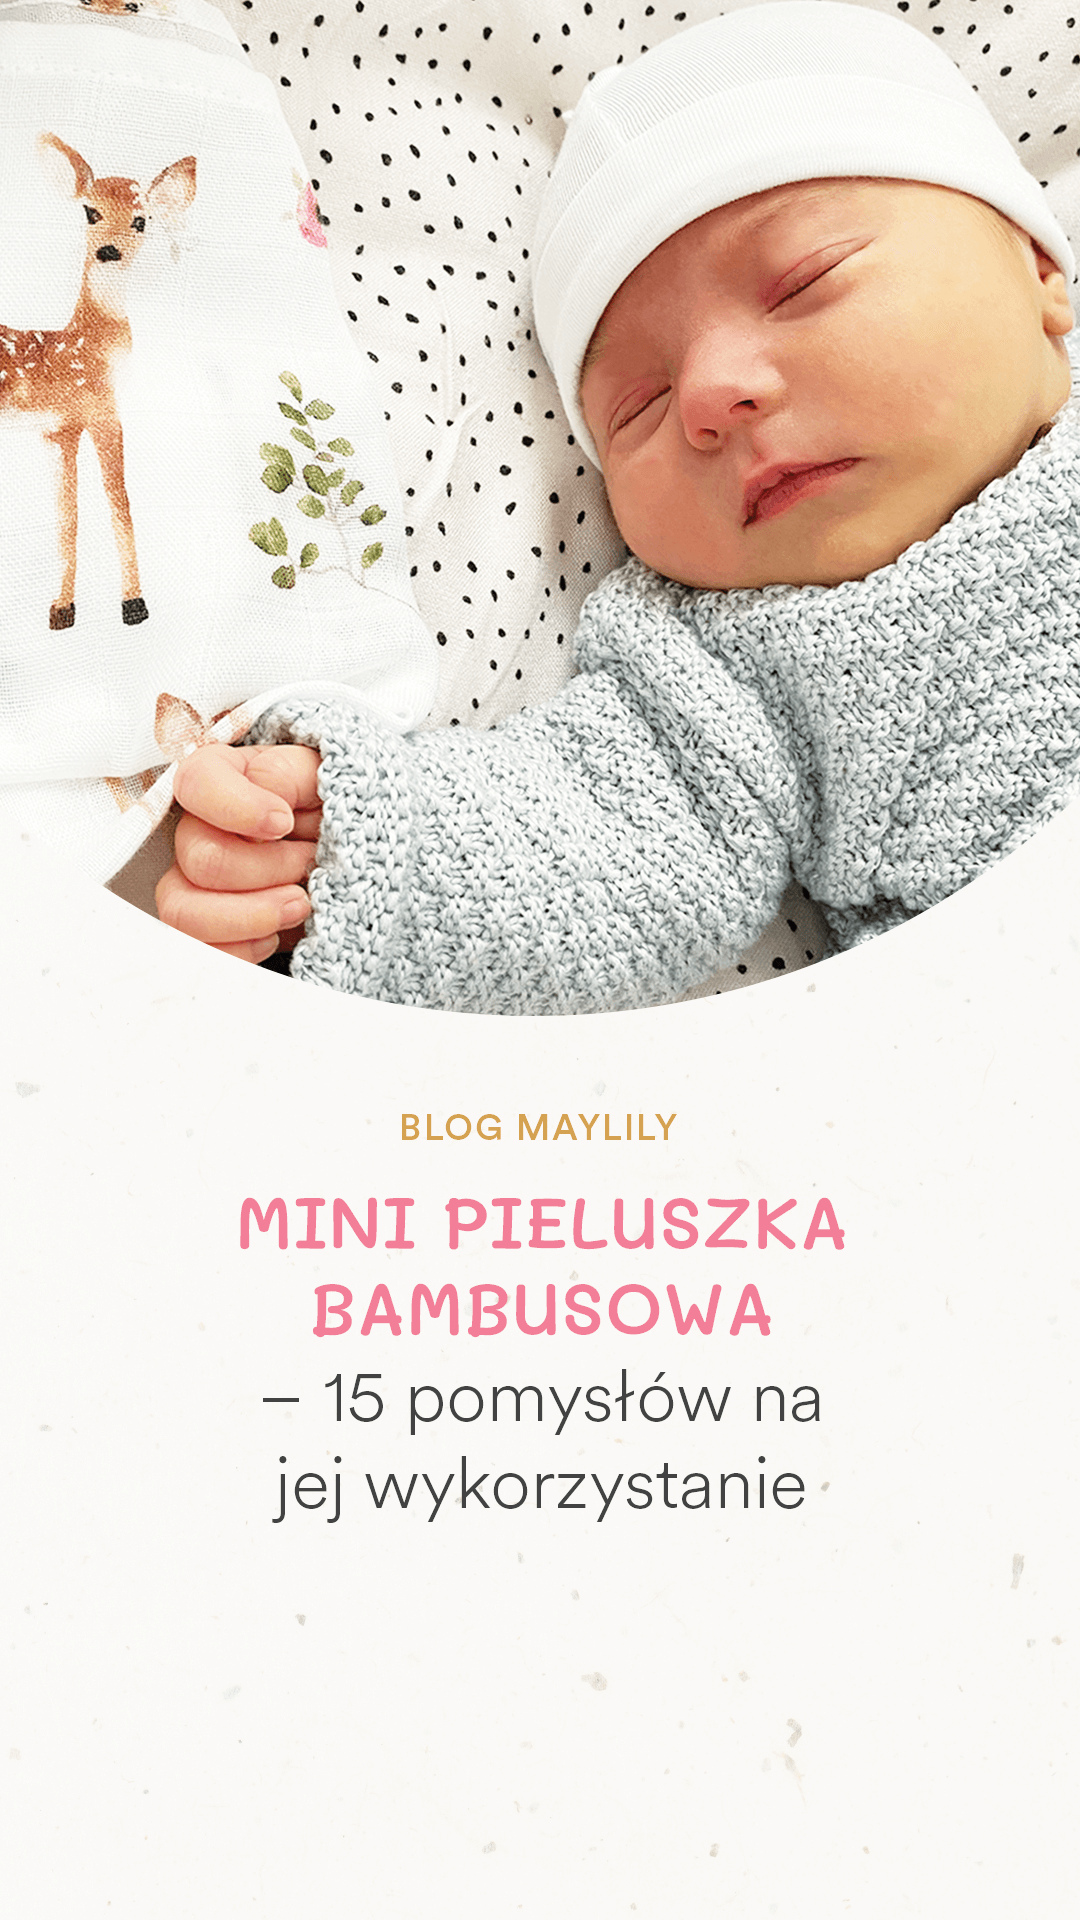 pieluszka niemowlęca bambusowa zastosowanie #pieluszka #niemowlę #noworodek